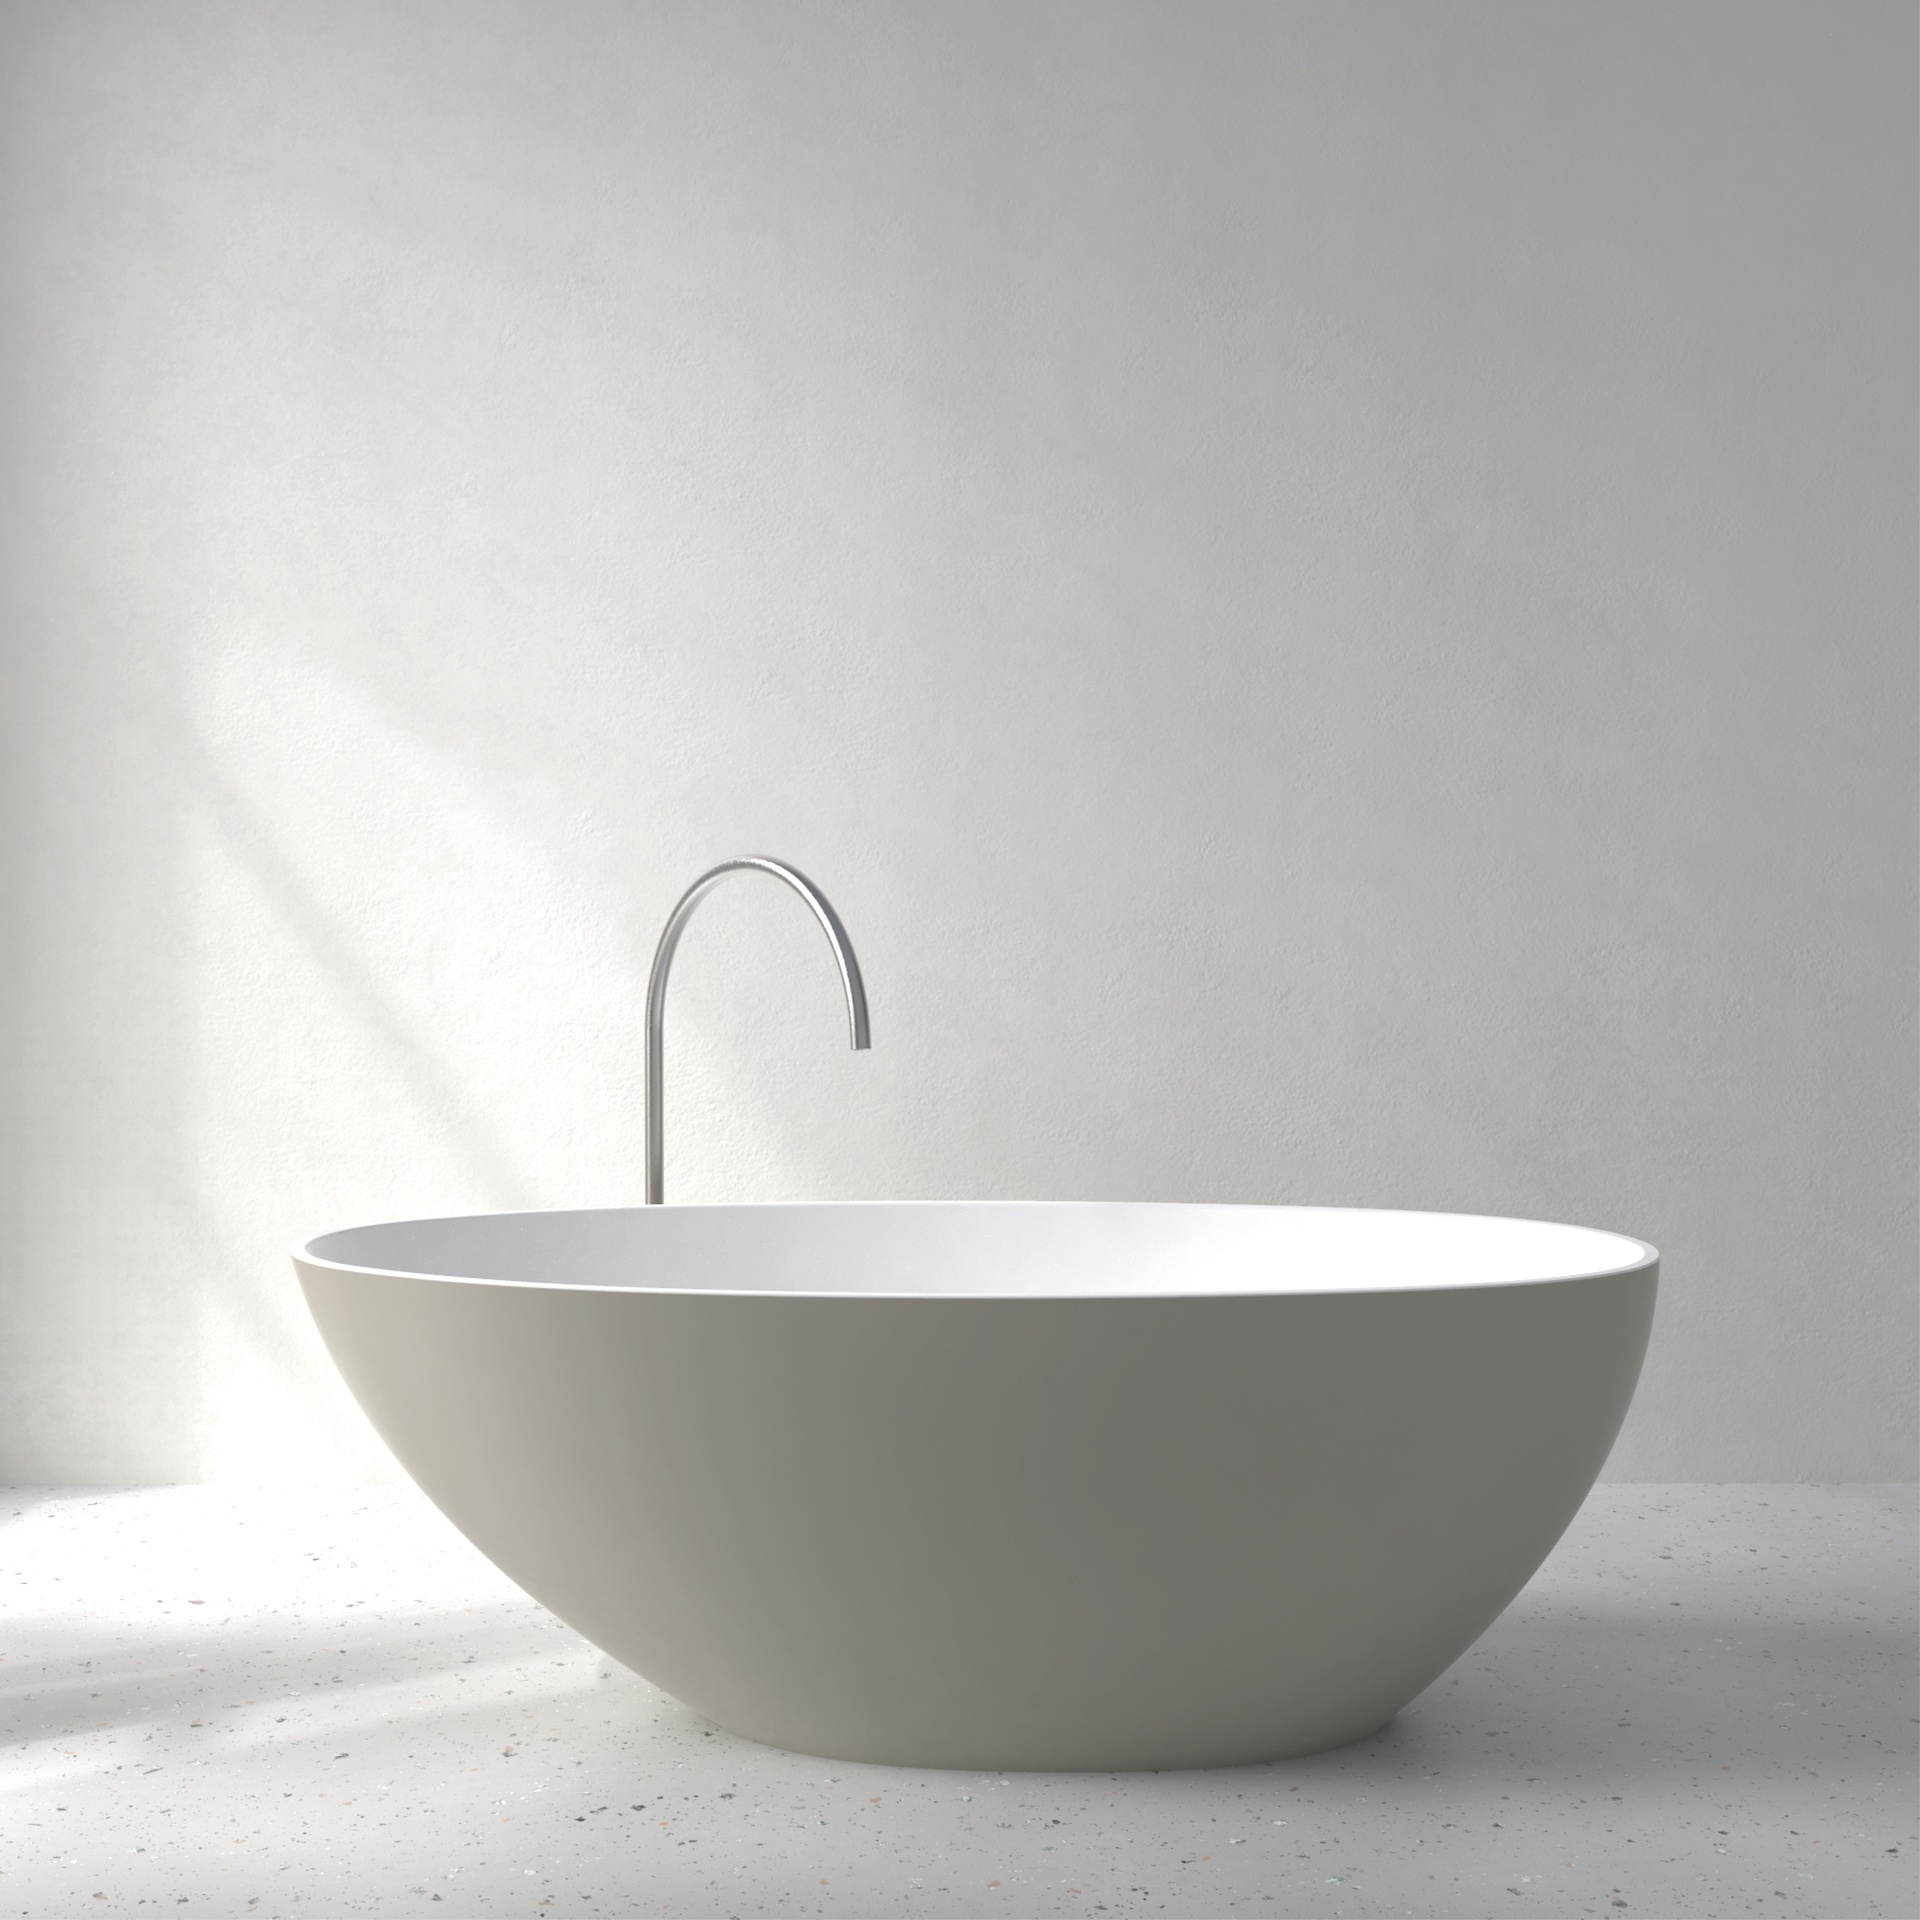 [FEA02-SSGREY] Ease bath with Soft Touch (Silk Grey)